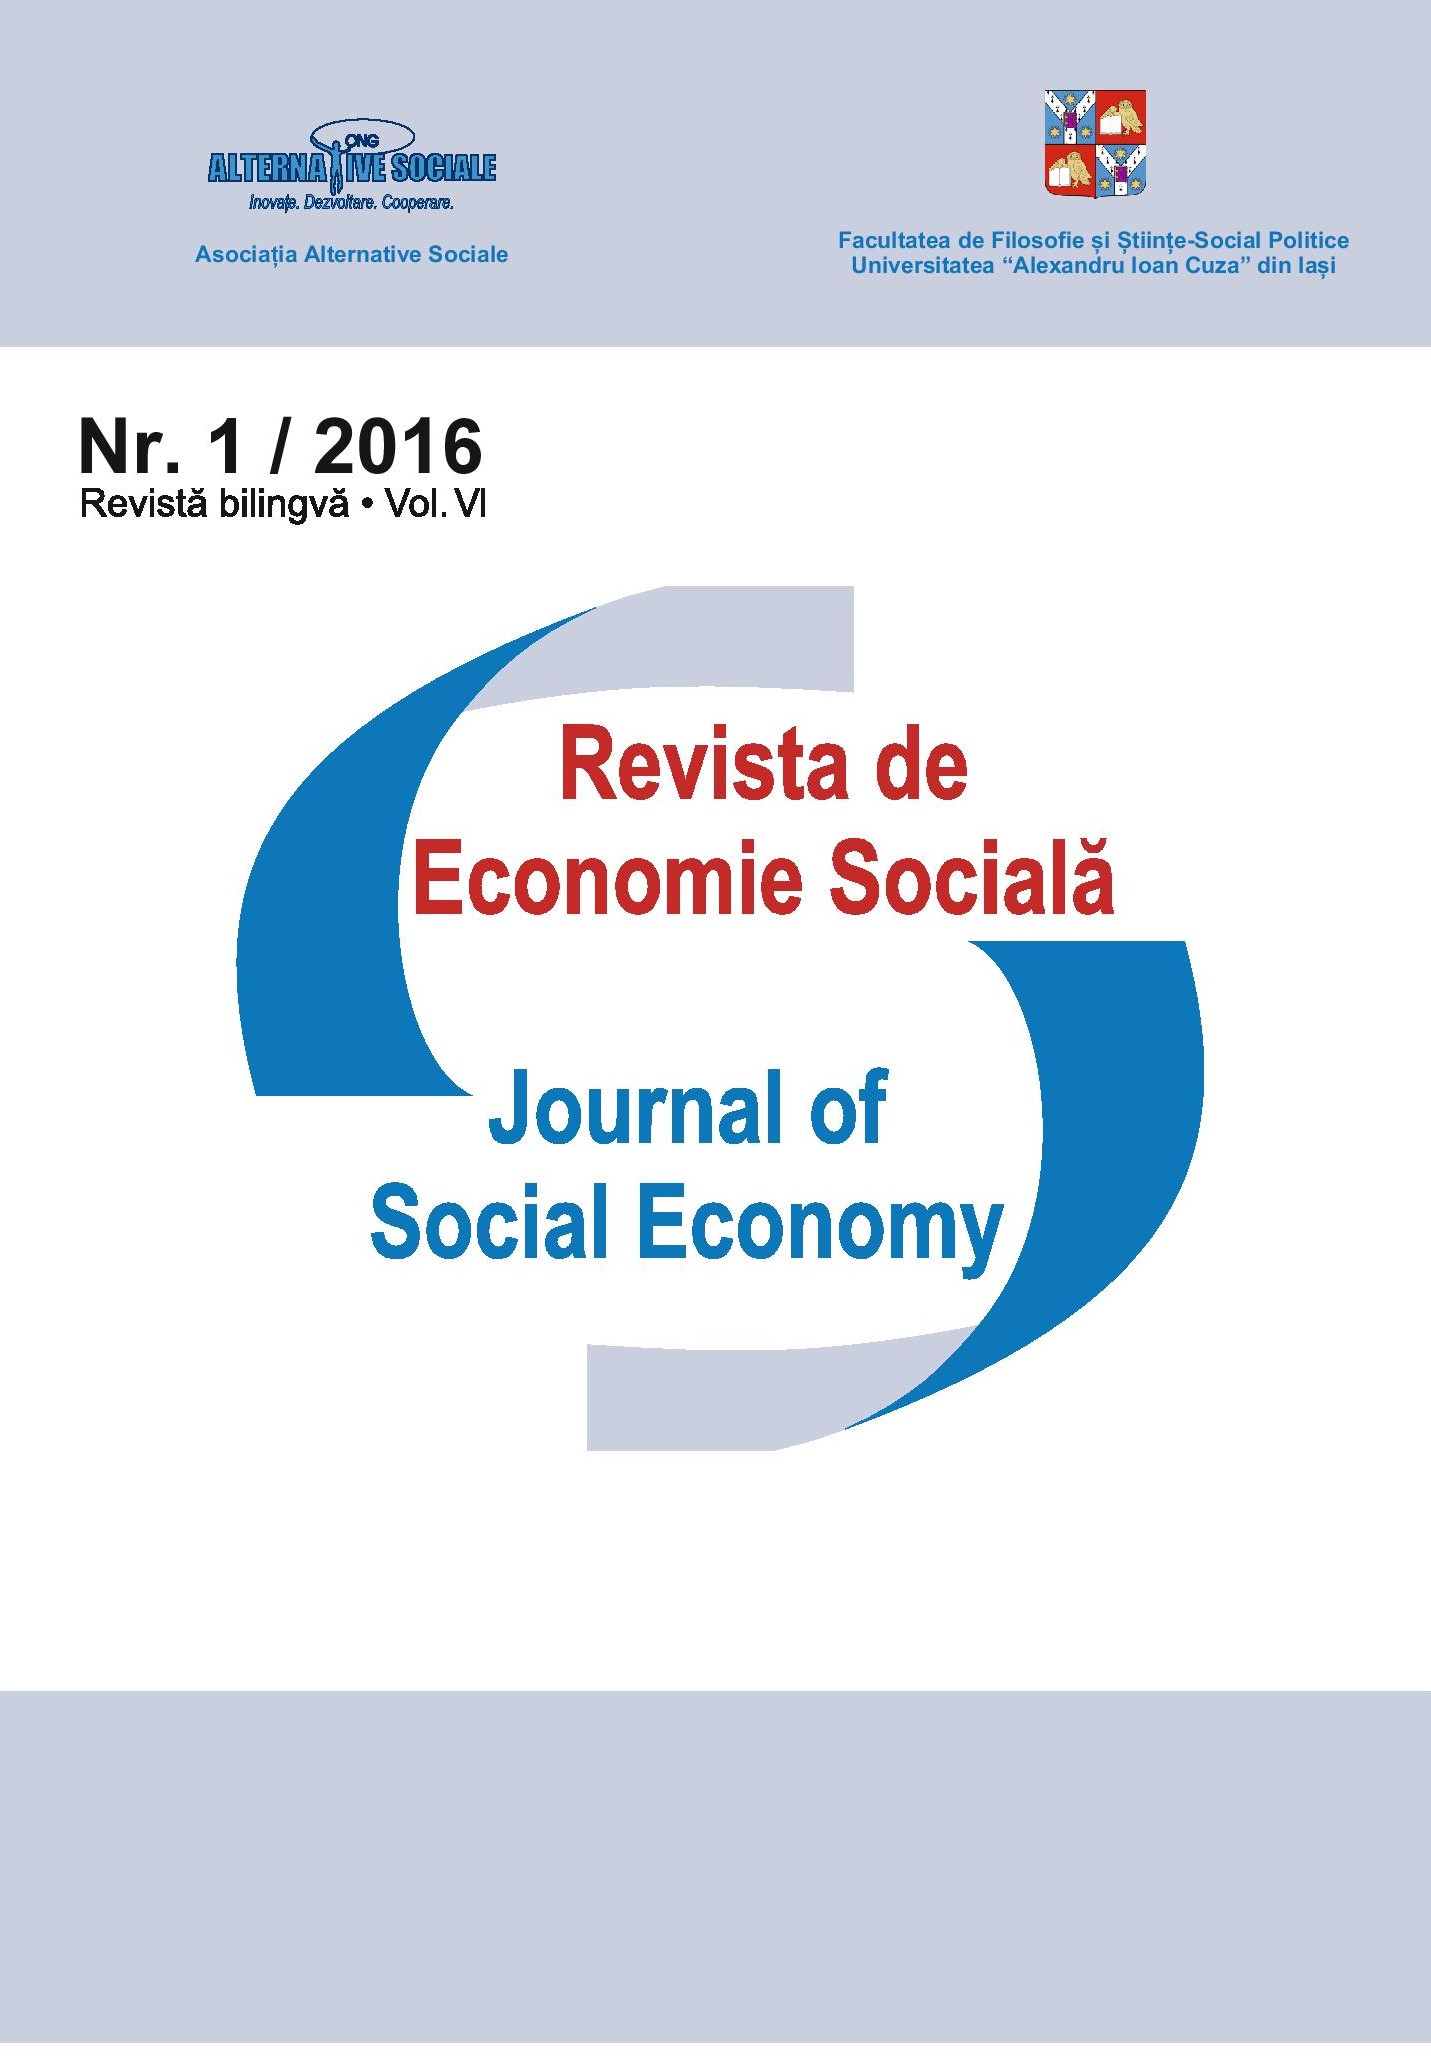 Journal of Social Economy